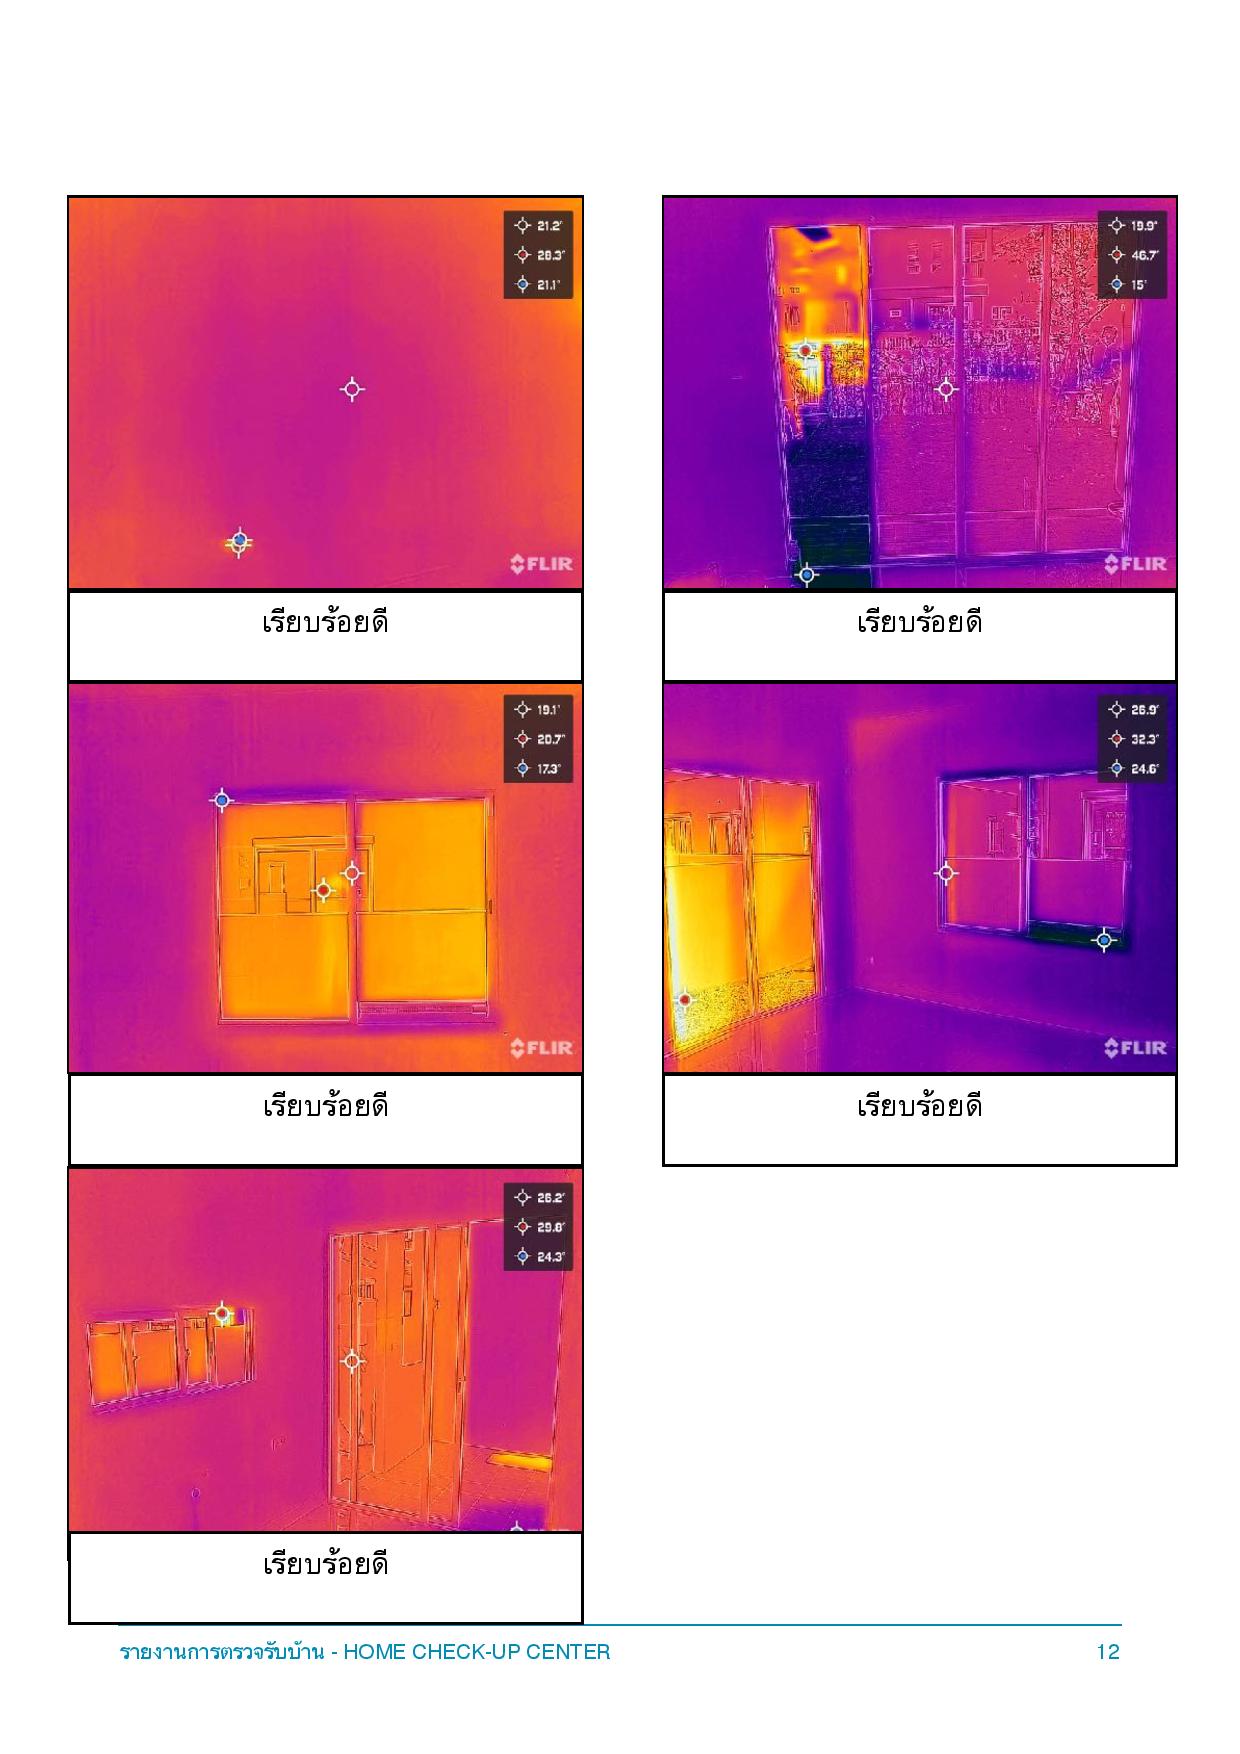 ตรวจการรั่วซึมด้วย Infrared Camera รอบหน้าต่าง บ้าน คณาสิริ พระราม2 วงแหวน